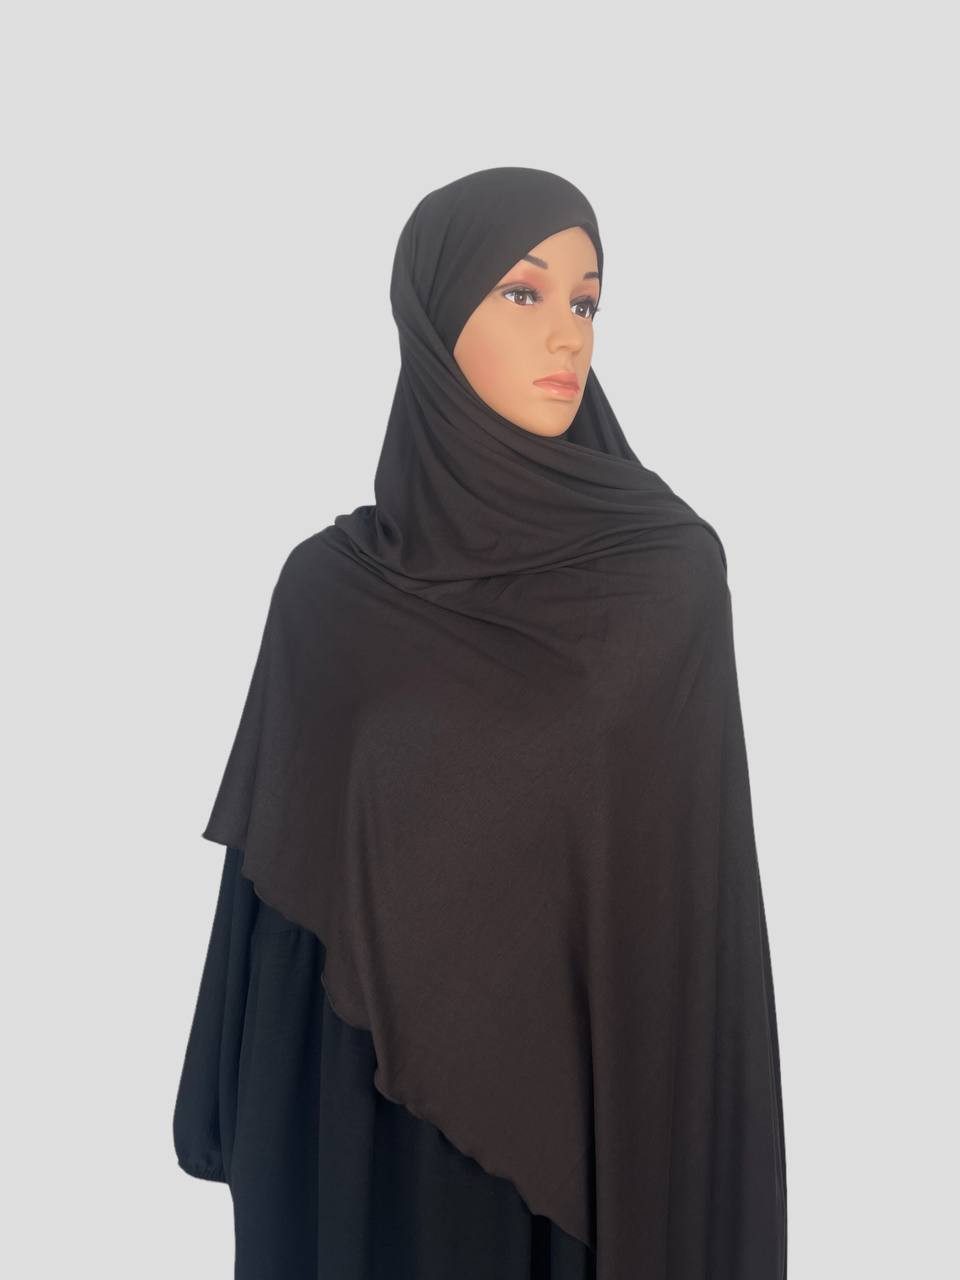 Aymasal Kopftuch XXL Jersey luxuriance Hijab mit integriertem Bone Scarf Kopftuch, Extra lang, 190x80, Bequem durch integrierten Bonet